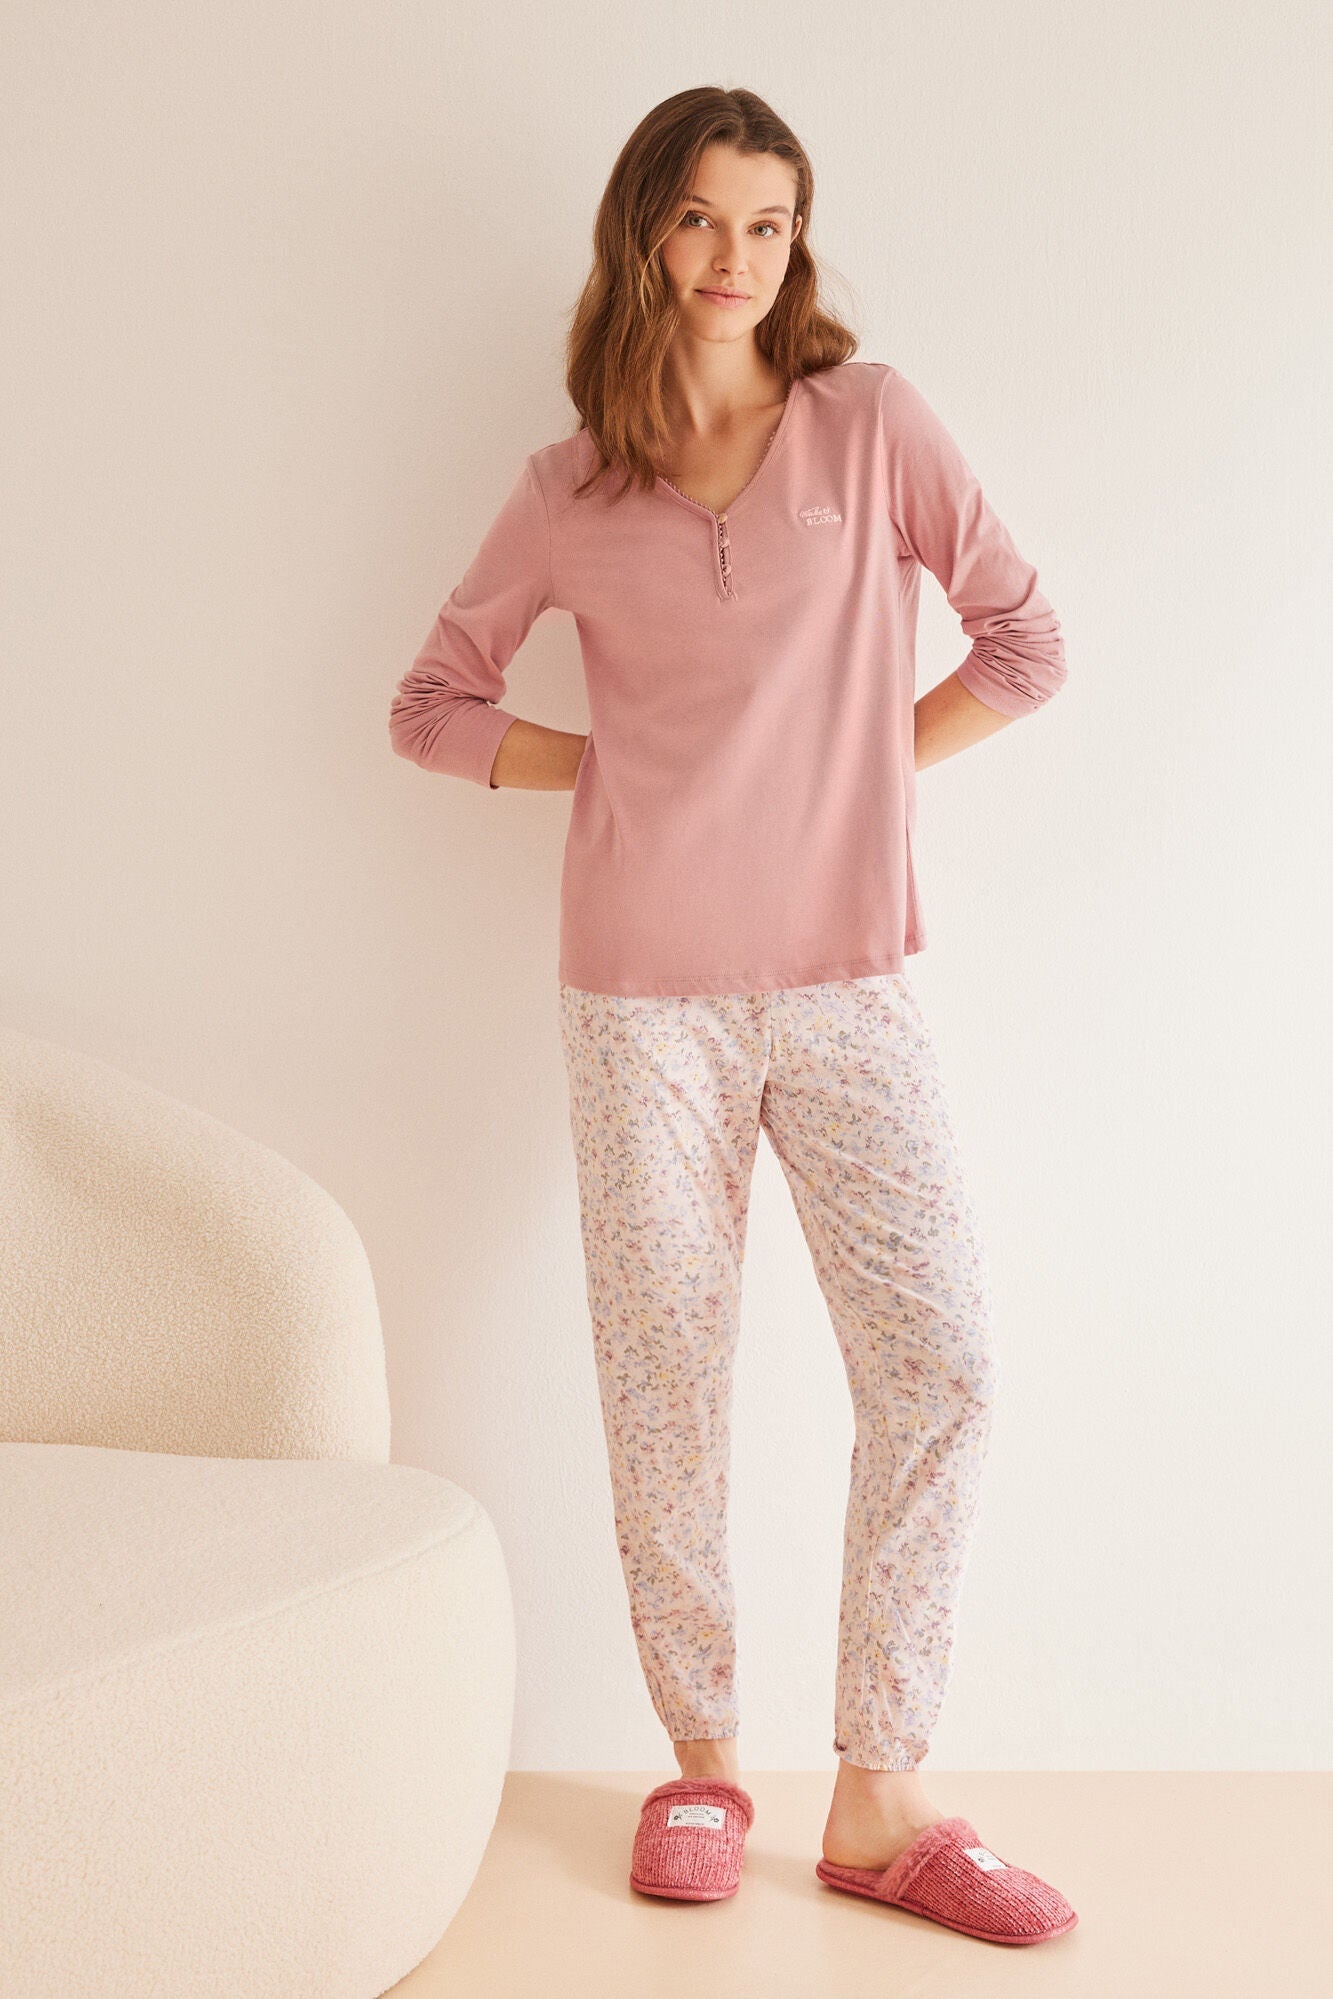 Long pyjamas with flowers